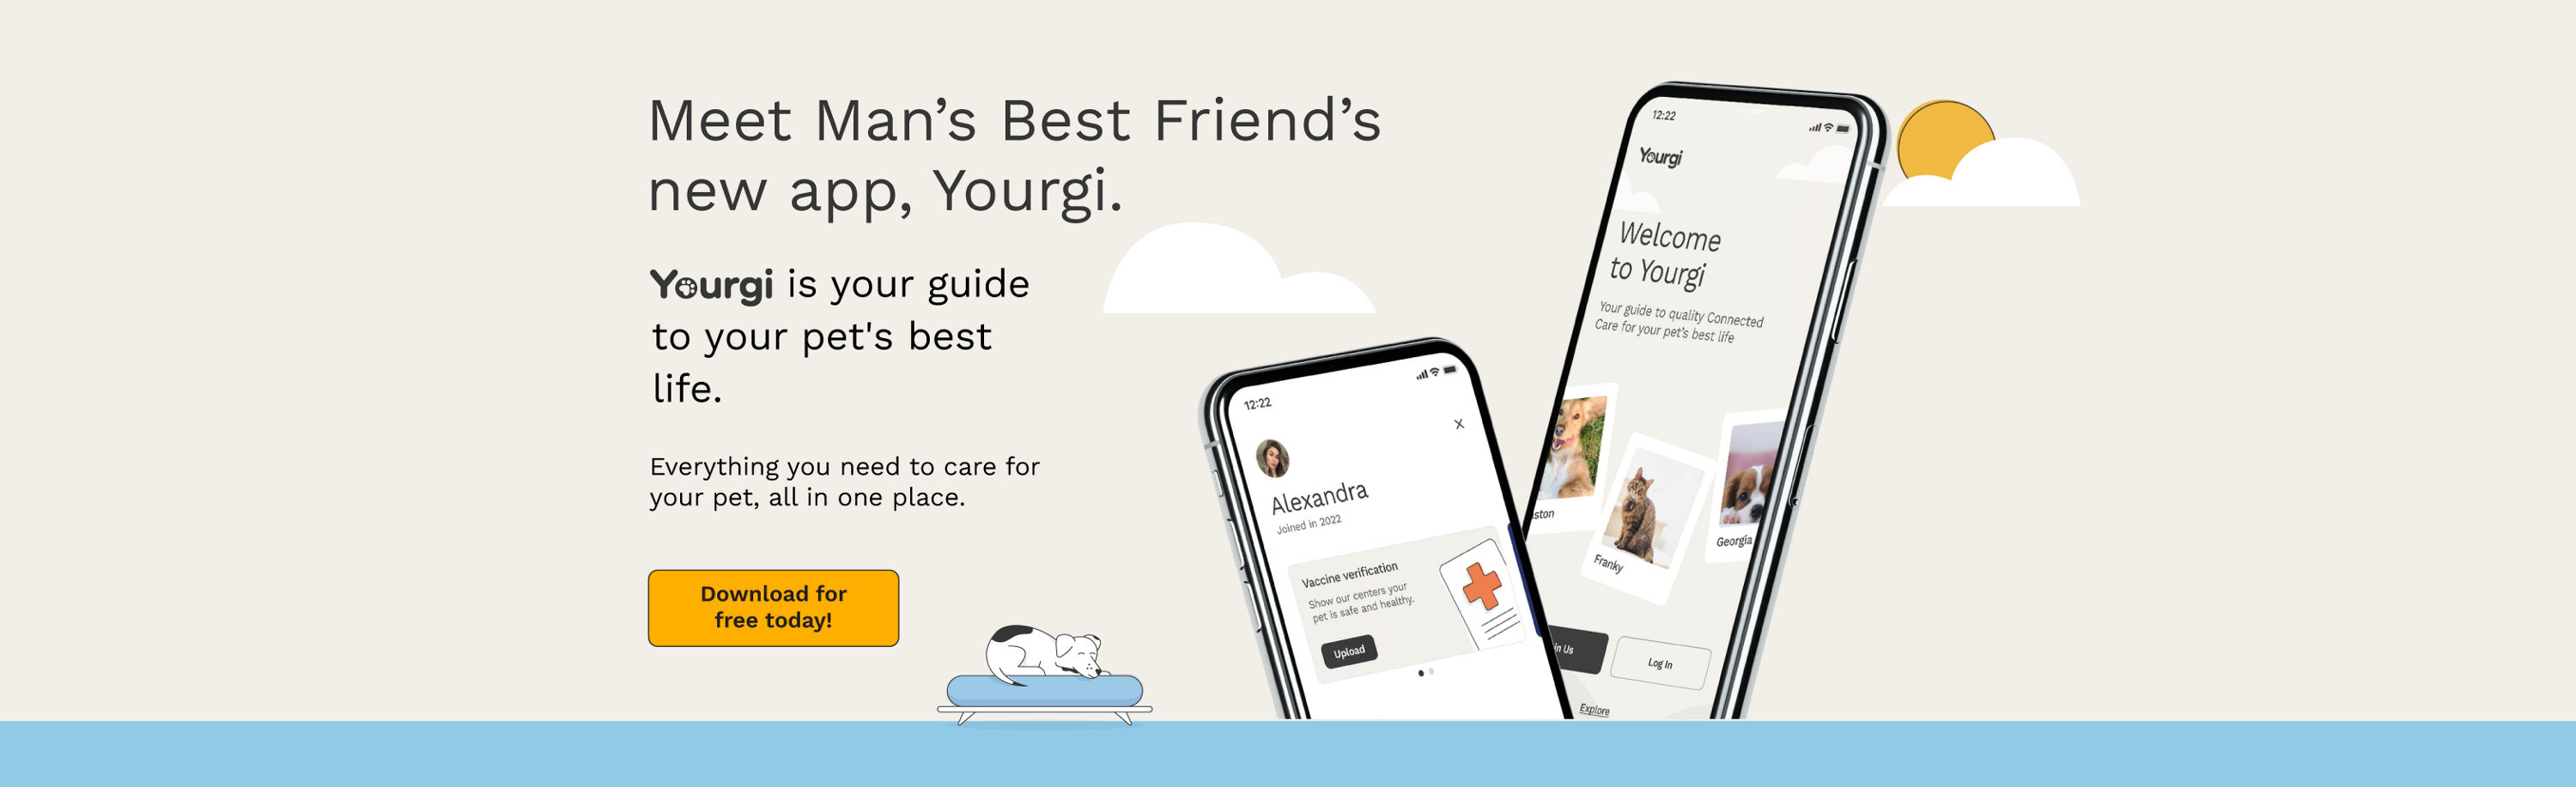 Meet Man's Best Friend's new app, Yourgi